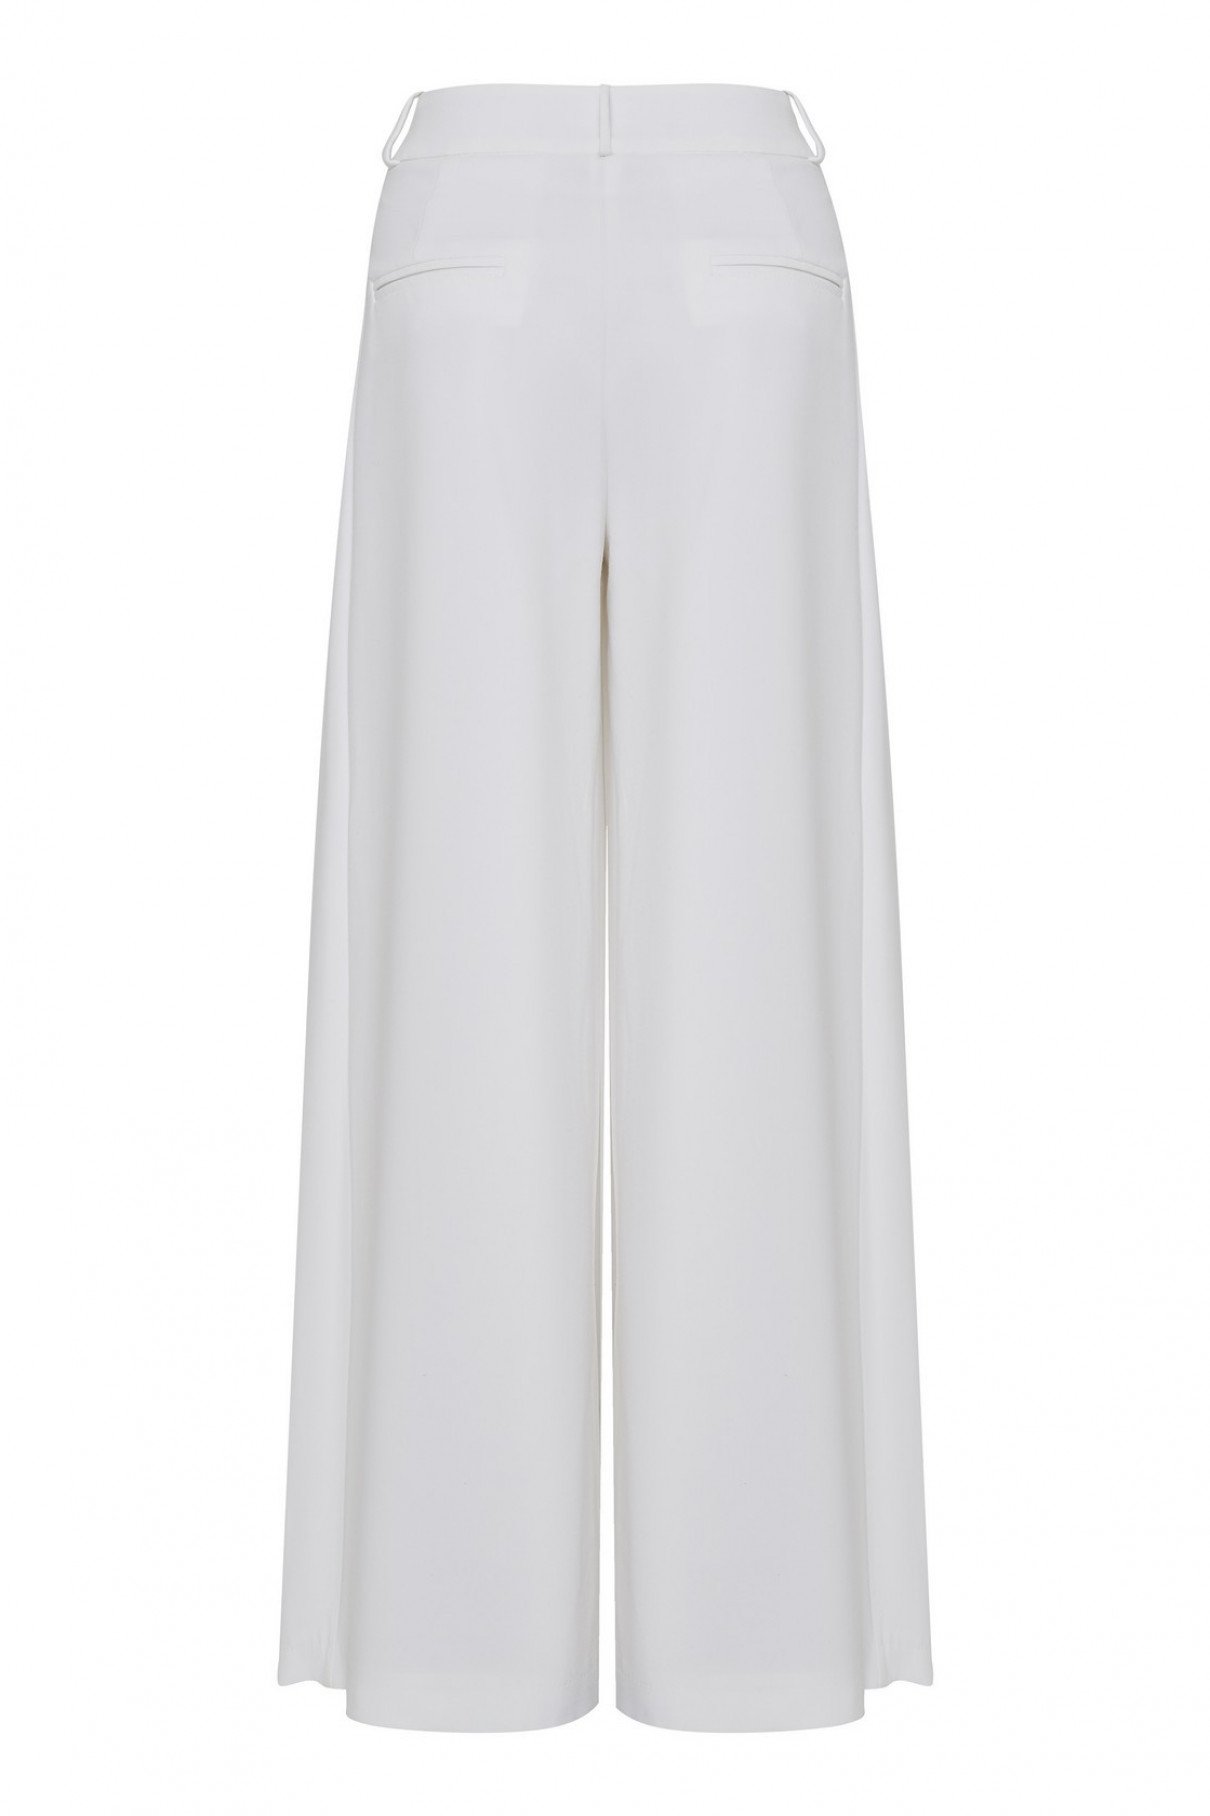 Белые брюки со складками , арт. FR20-АВ-4-бл-4 купить в интернет-магазине